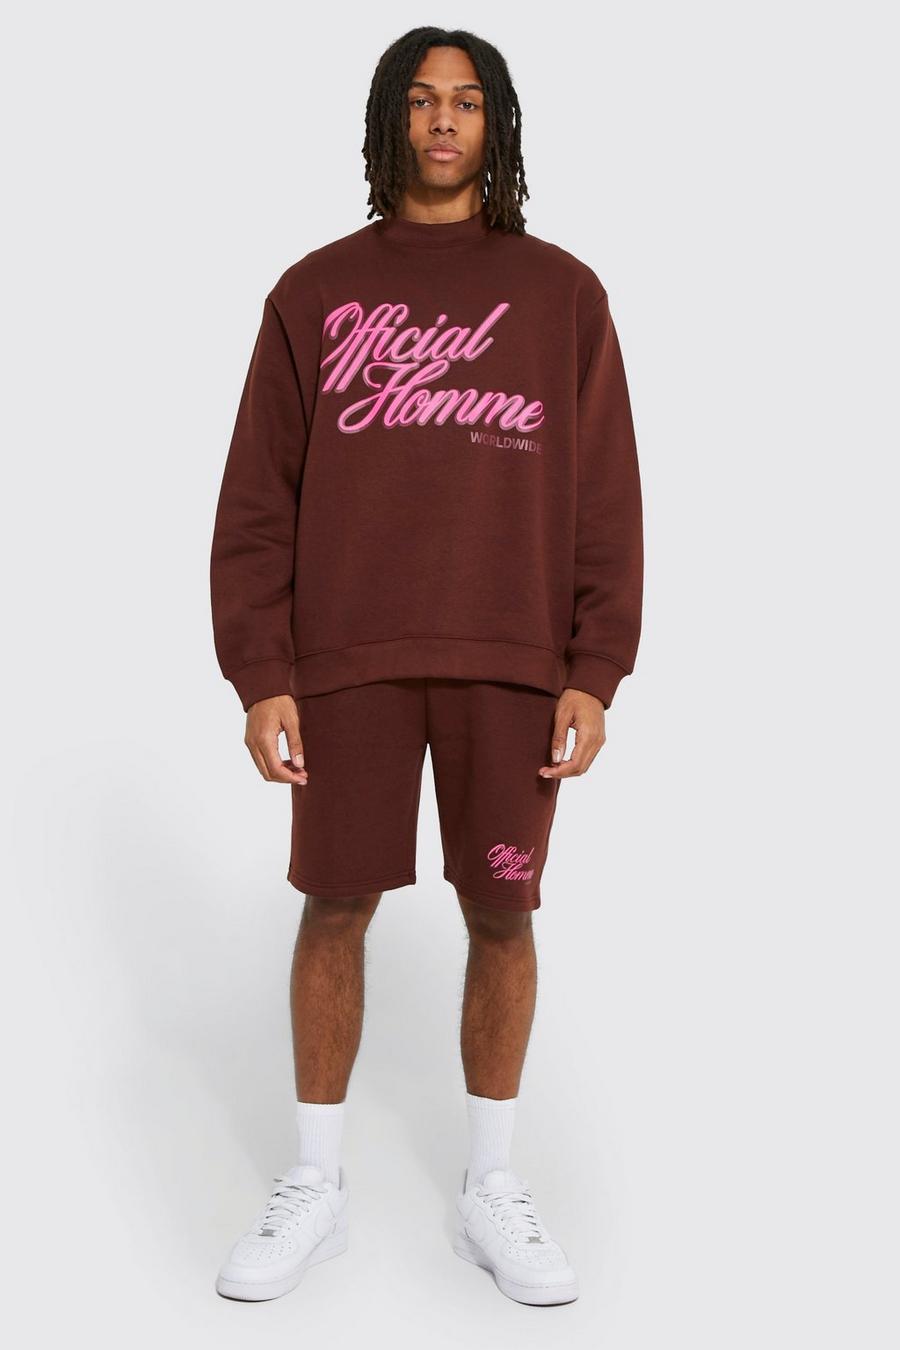 Kurzer Oversize Homme Sweatshirt-Trainingsanzug, Chocolate braun